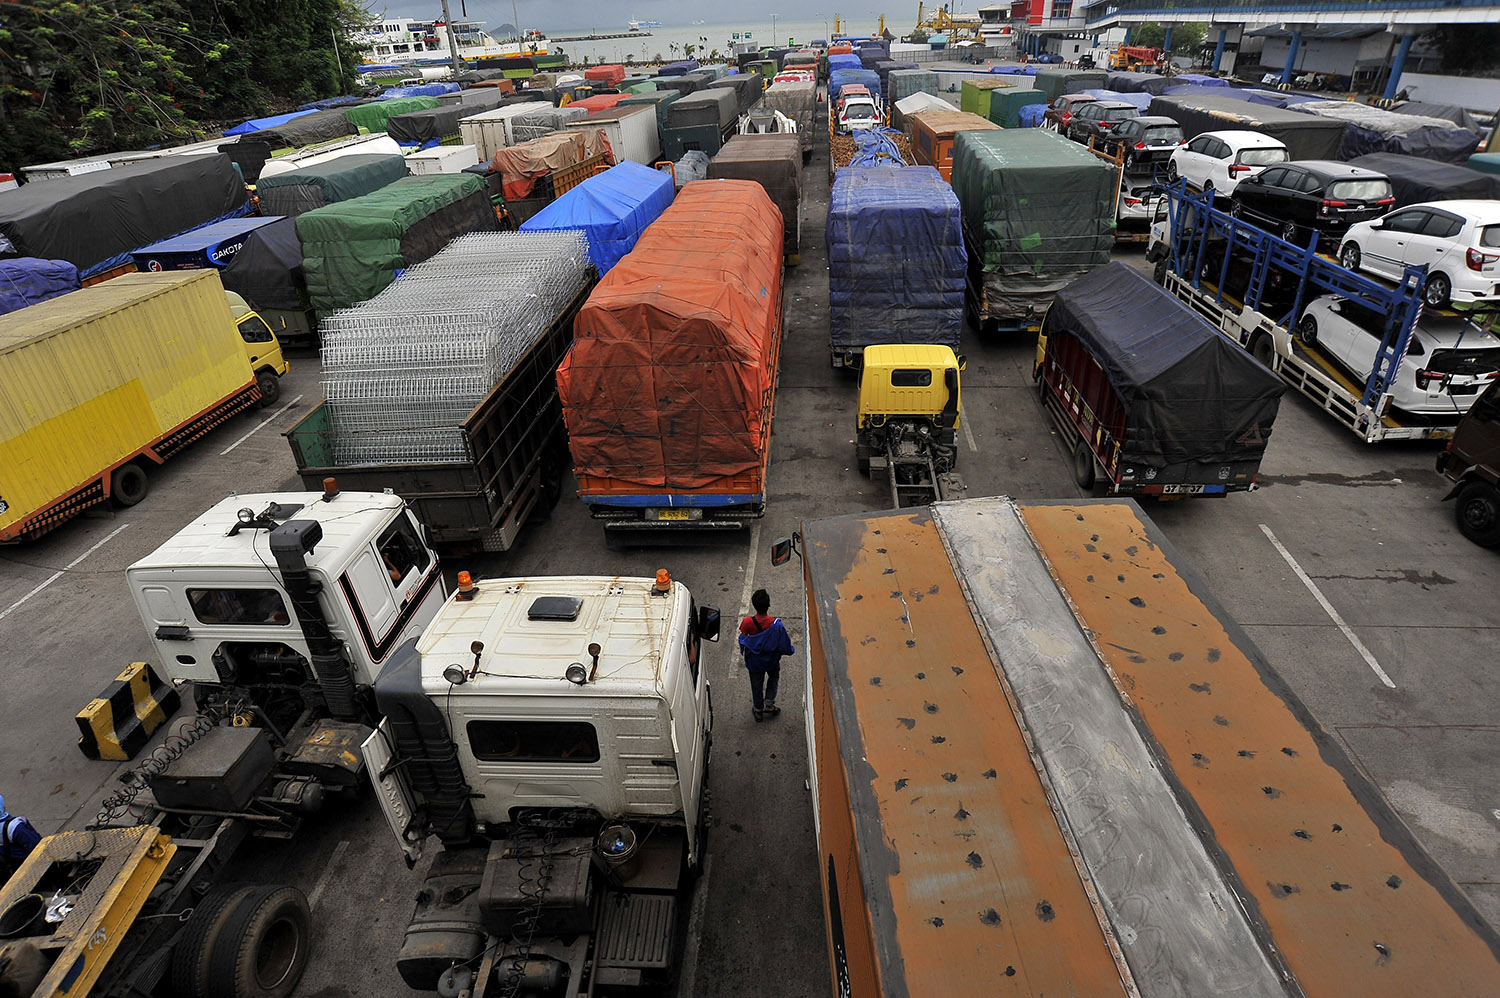 180 Ribu Orang Sudah Menyeberang ke Sumatra Via Pelabuhan Merak 